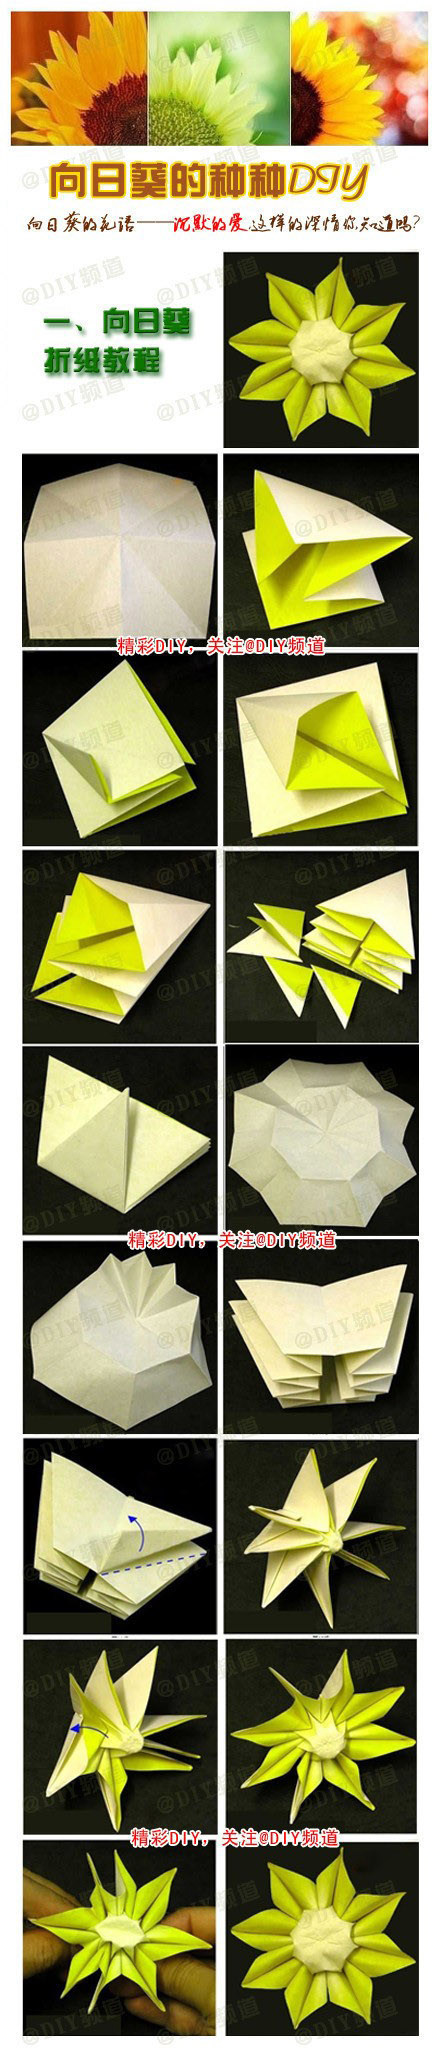 向日葵折纸手工diy教程图片